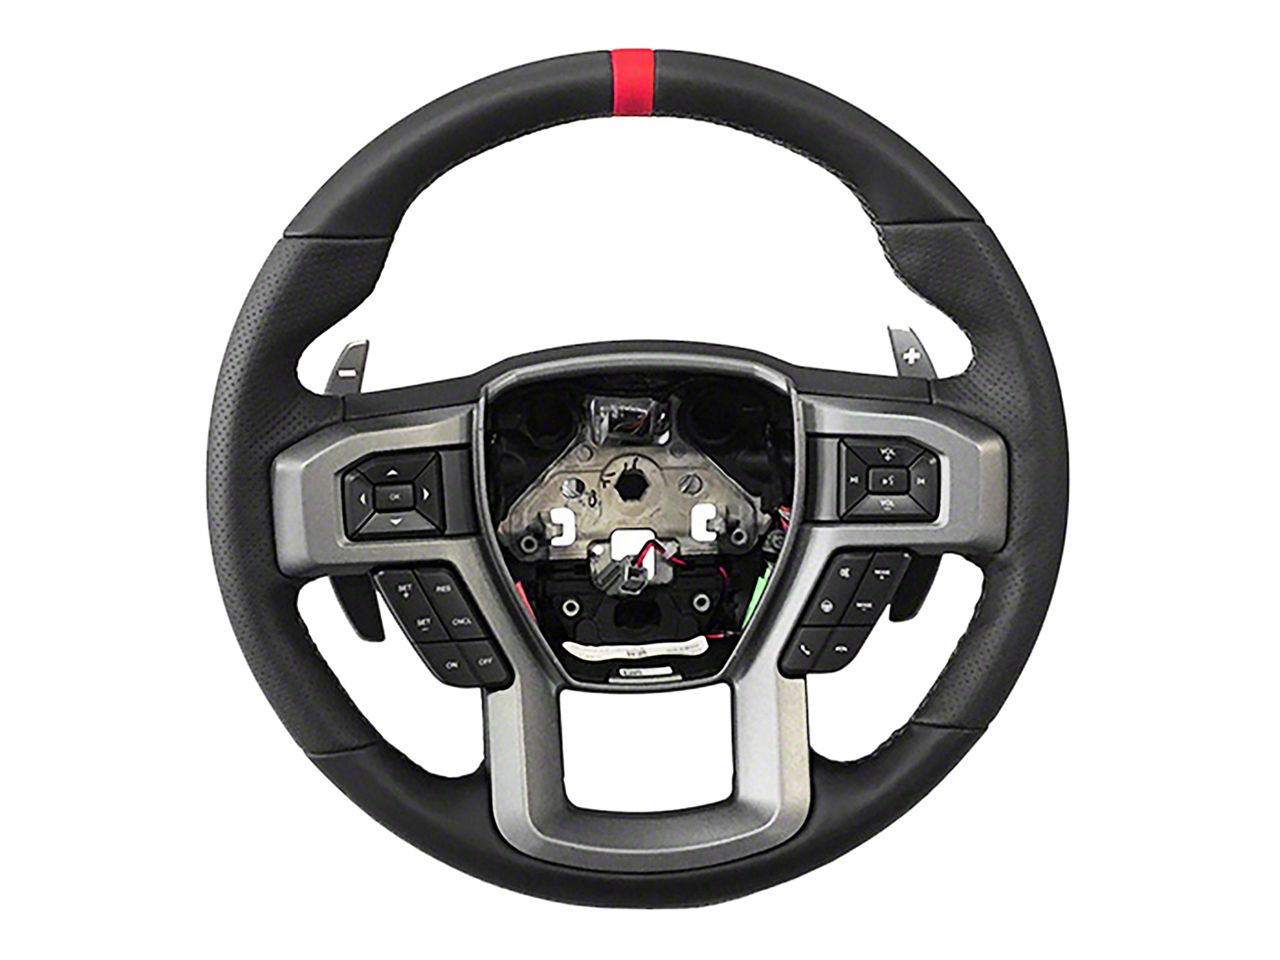 F350 Steering Wheels & Accessories 2011-2016